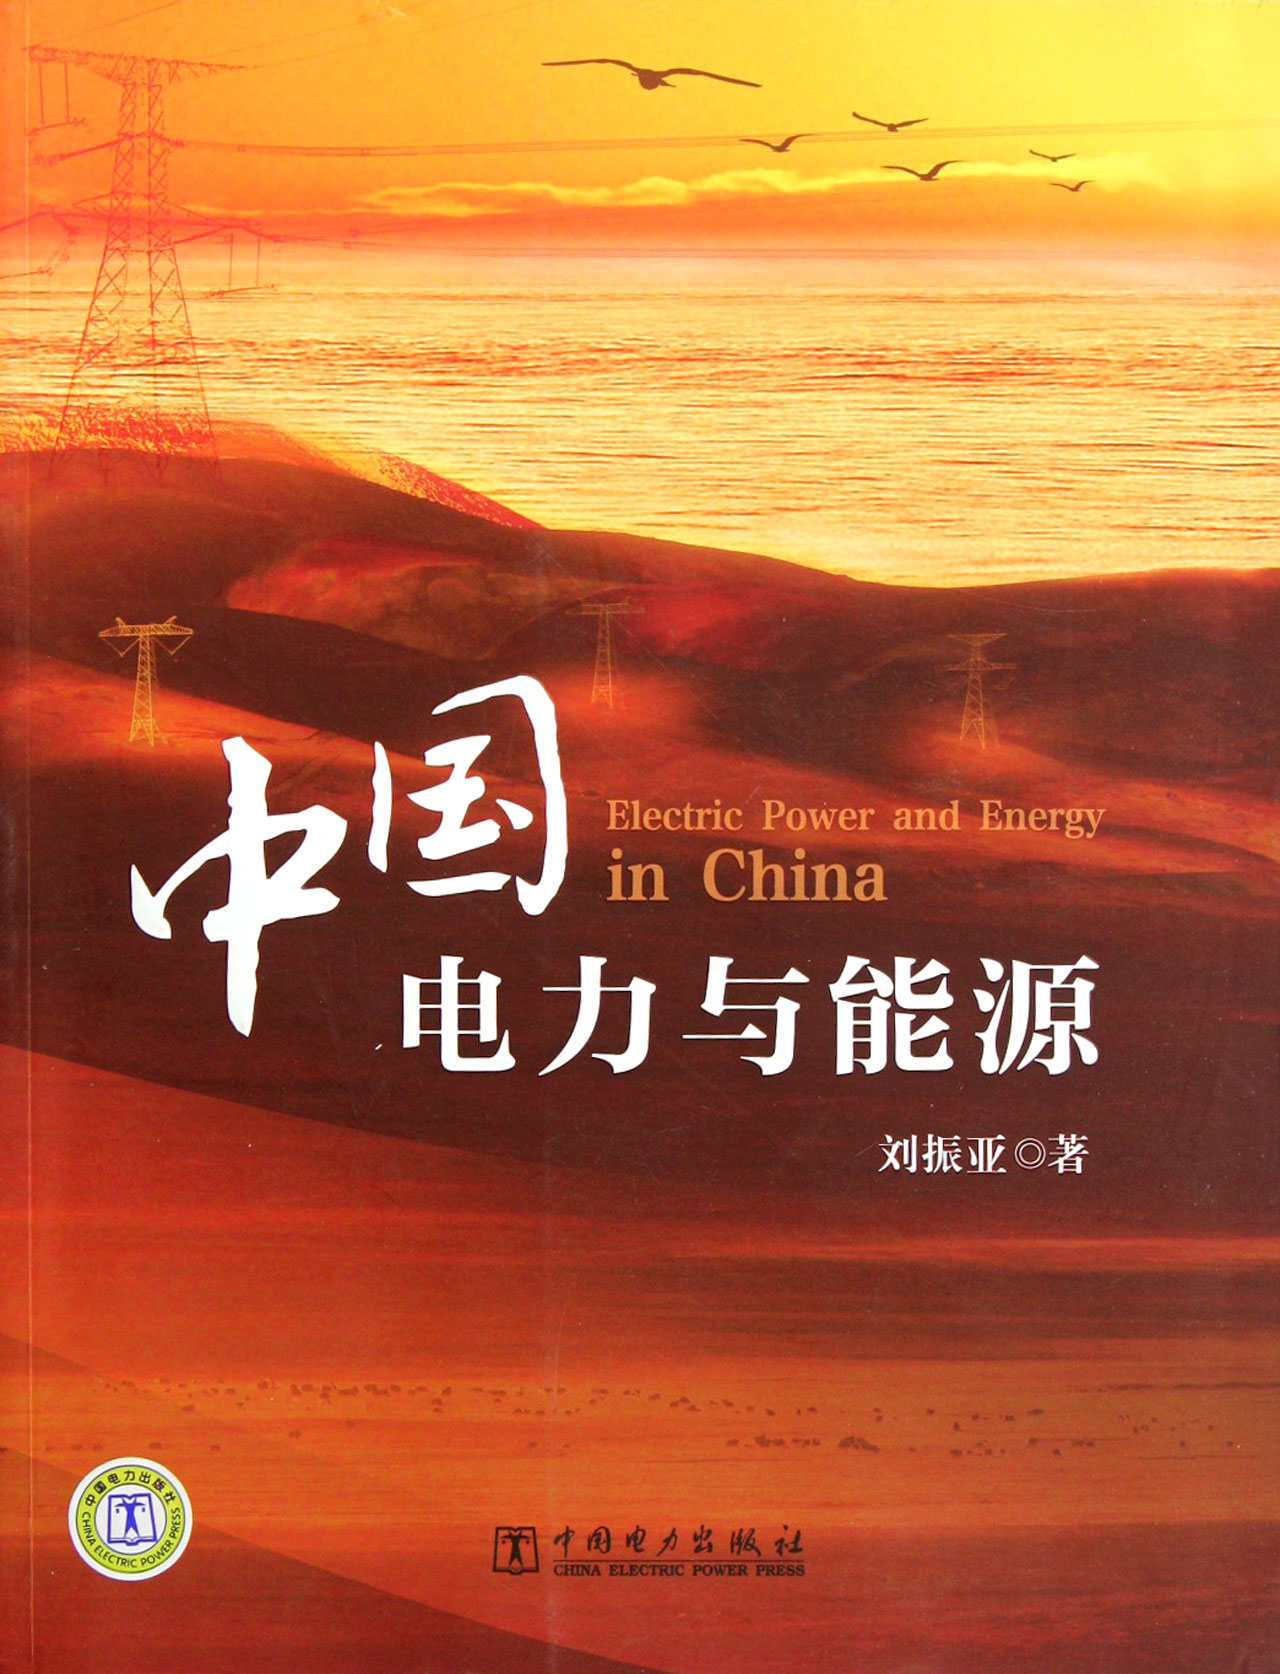 中国电力与能源 工业技术 书籍 epub格式下载